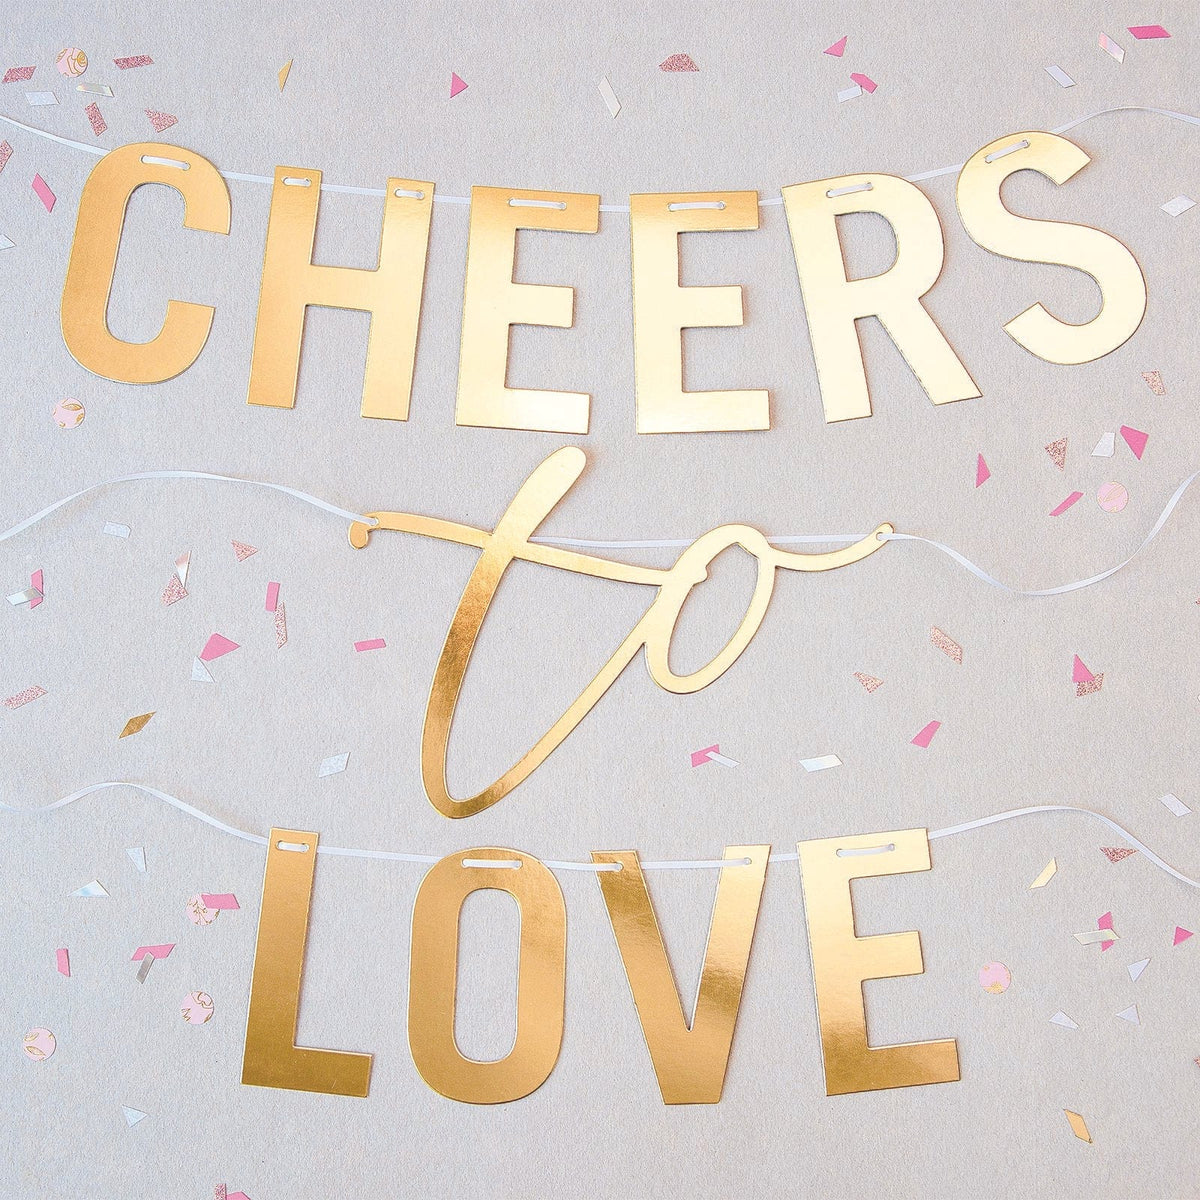 Cheers To Love Wedding Banner Gartner Studios Banner 38159